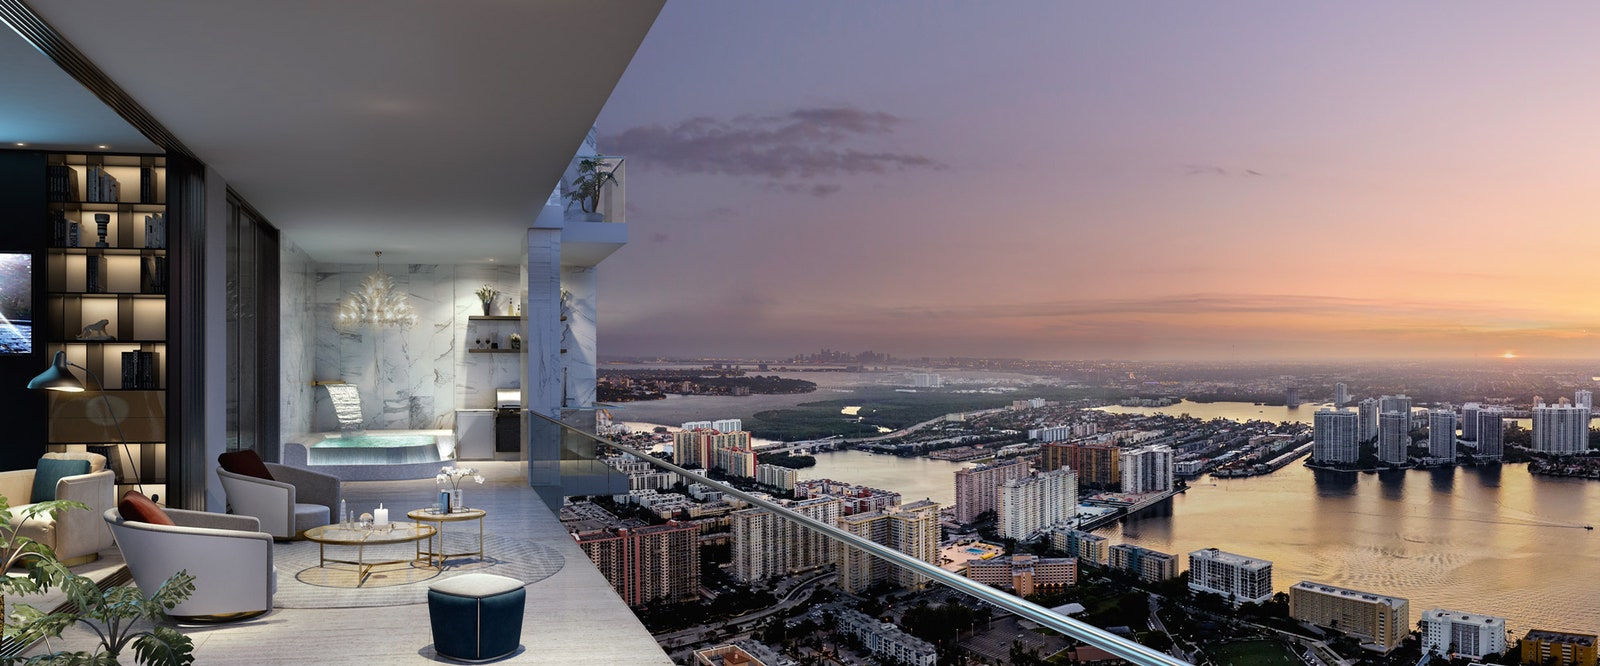 С Западной террасы проектируемого комплекса будет открываться вид на Майами.